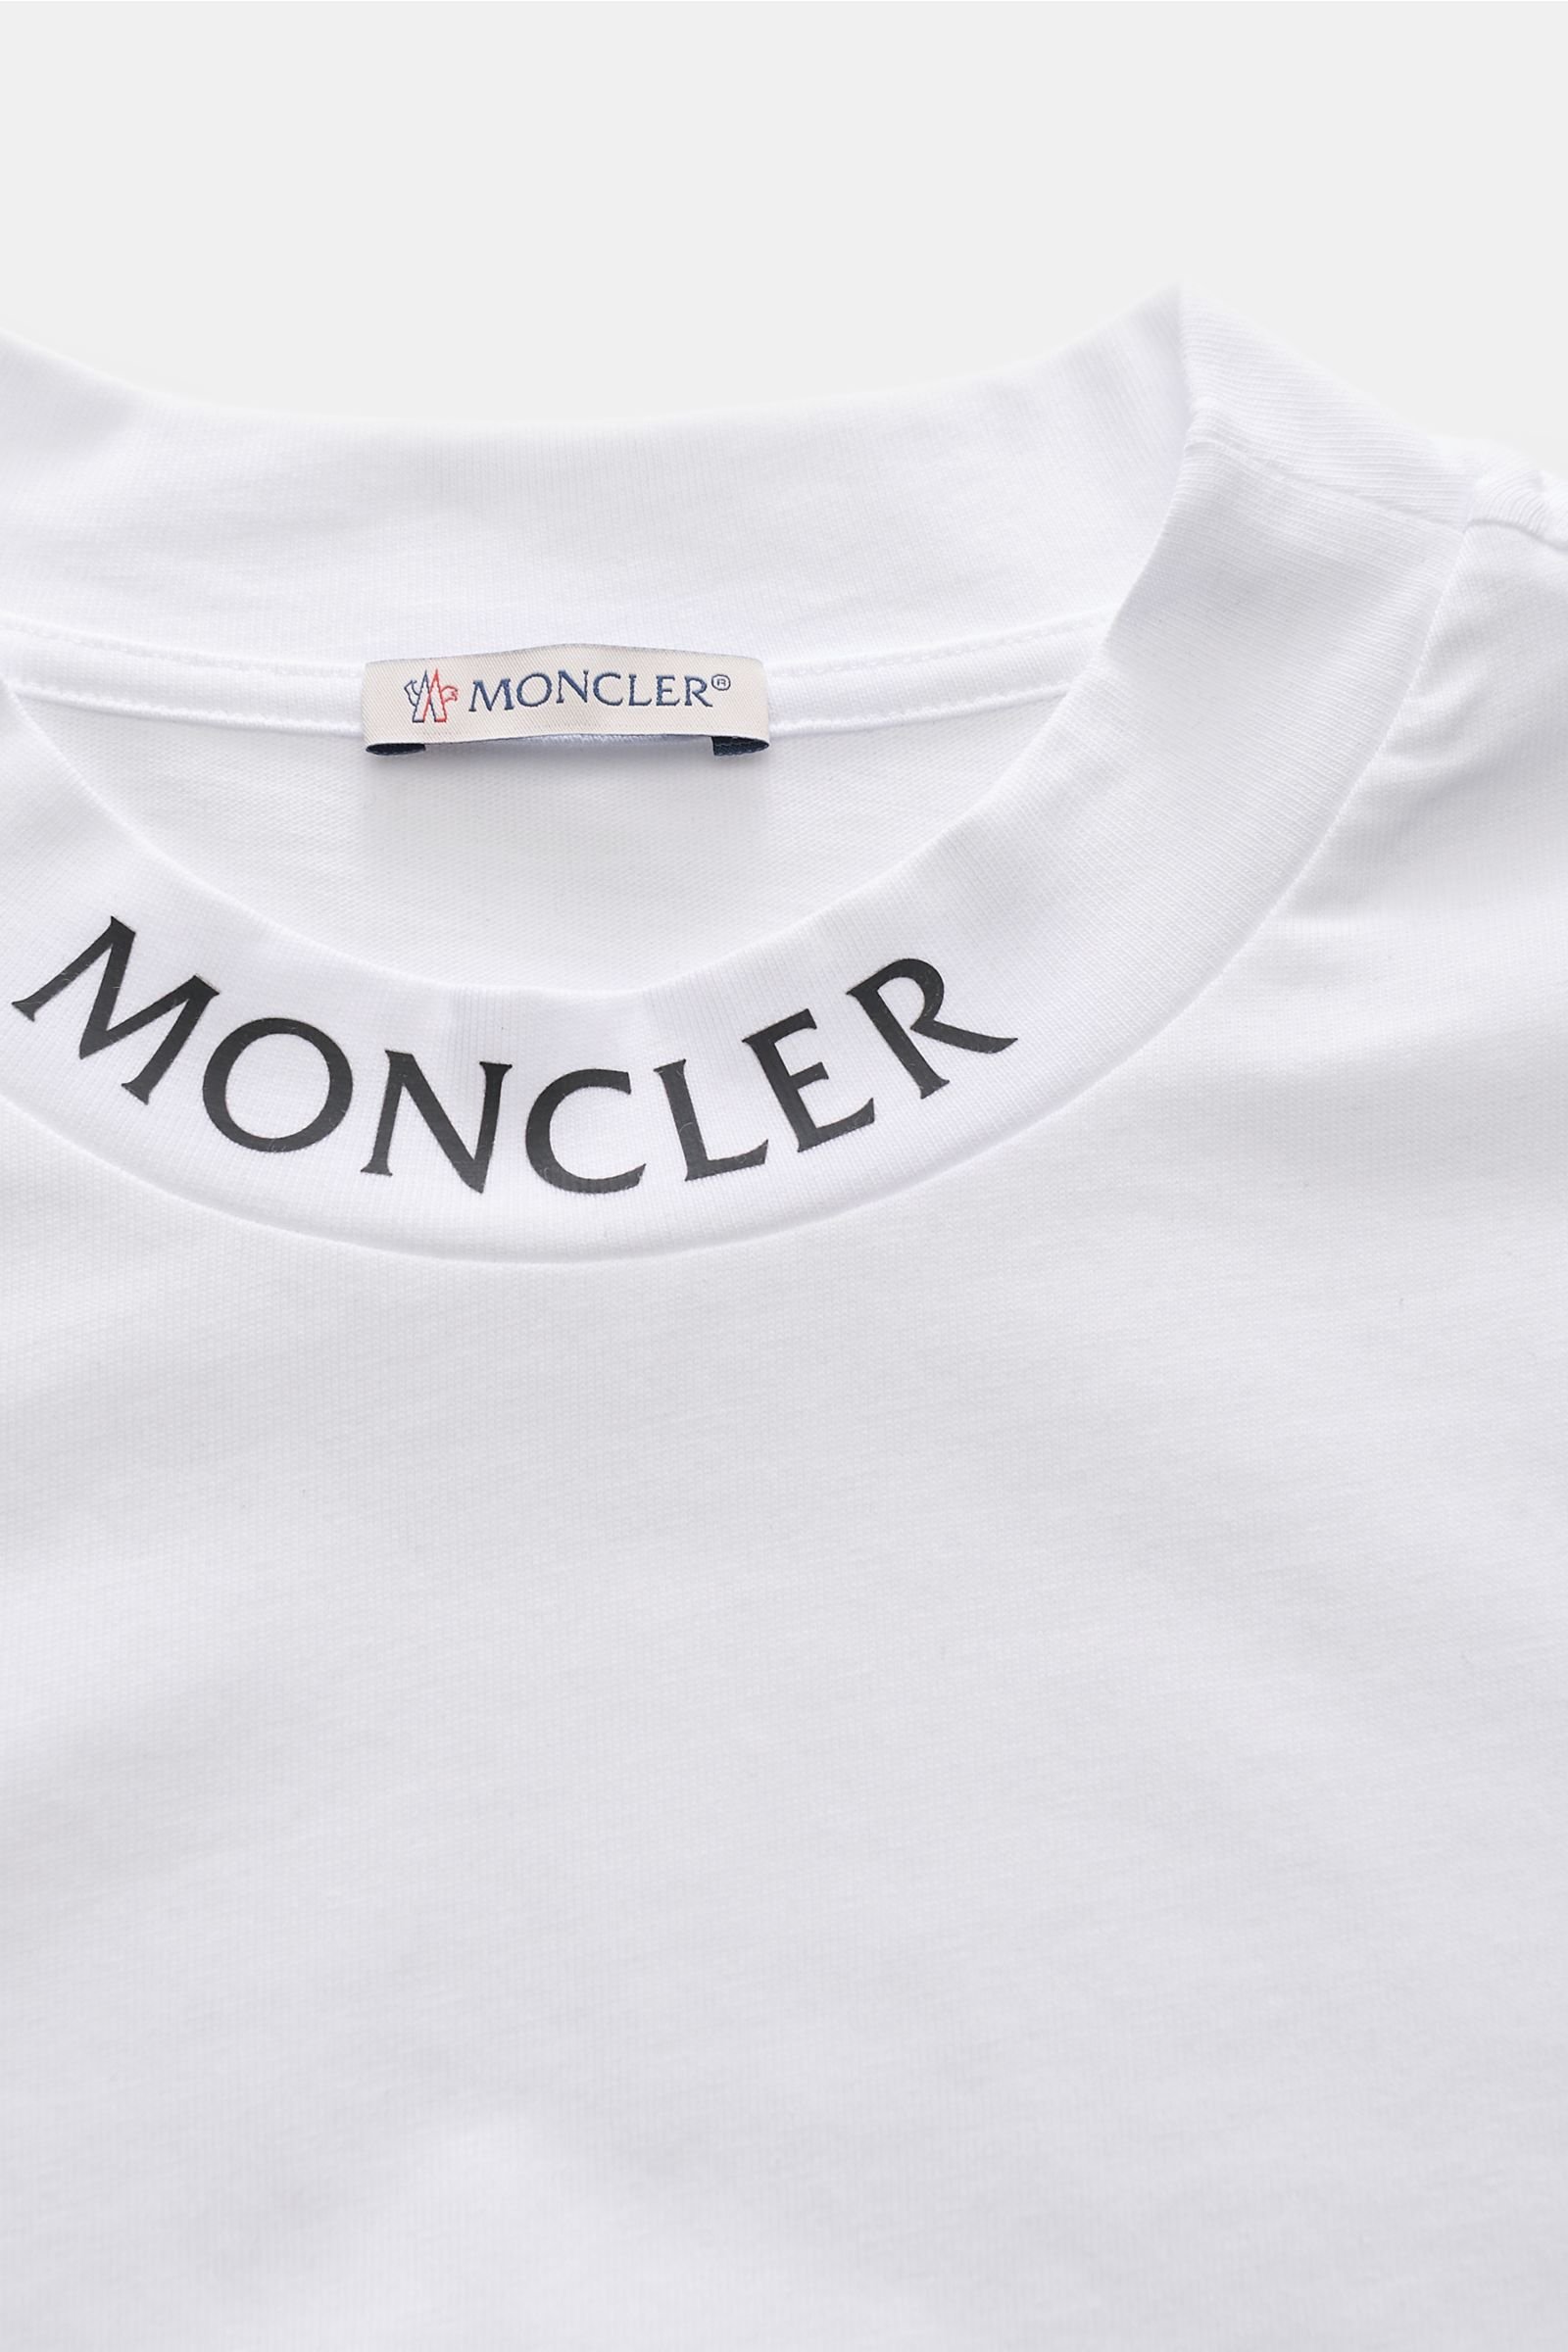 MONCLER Rundhals-T-Shirt weiß | BRAUN Hamburg